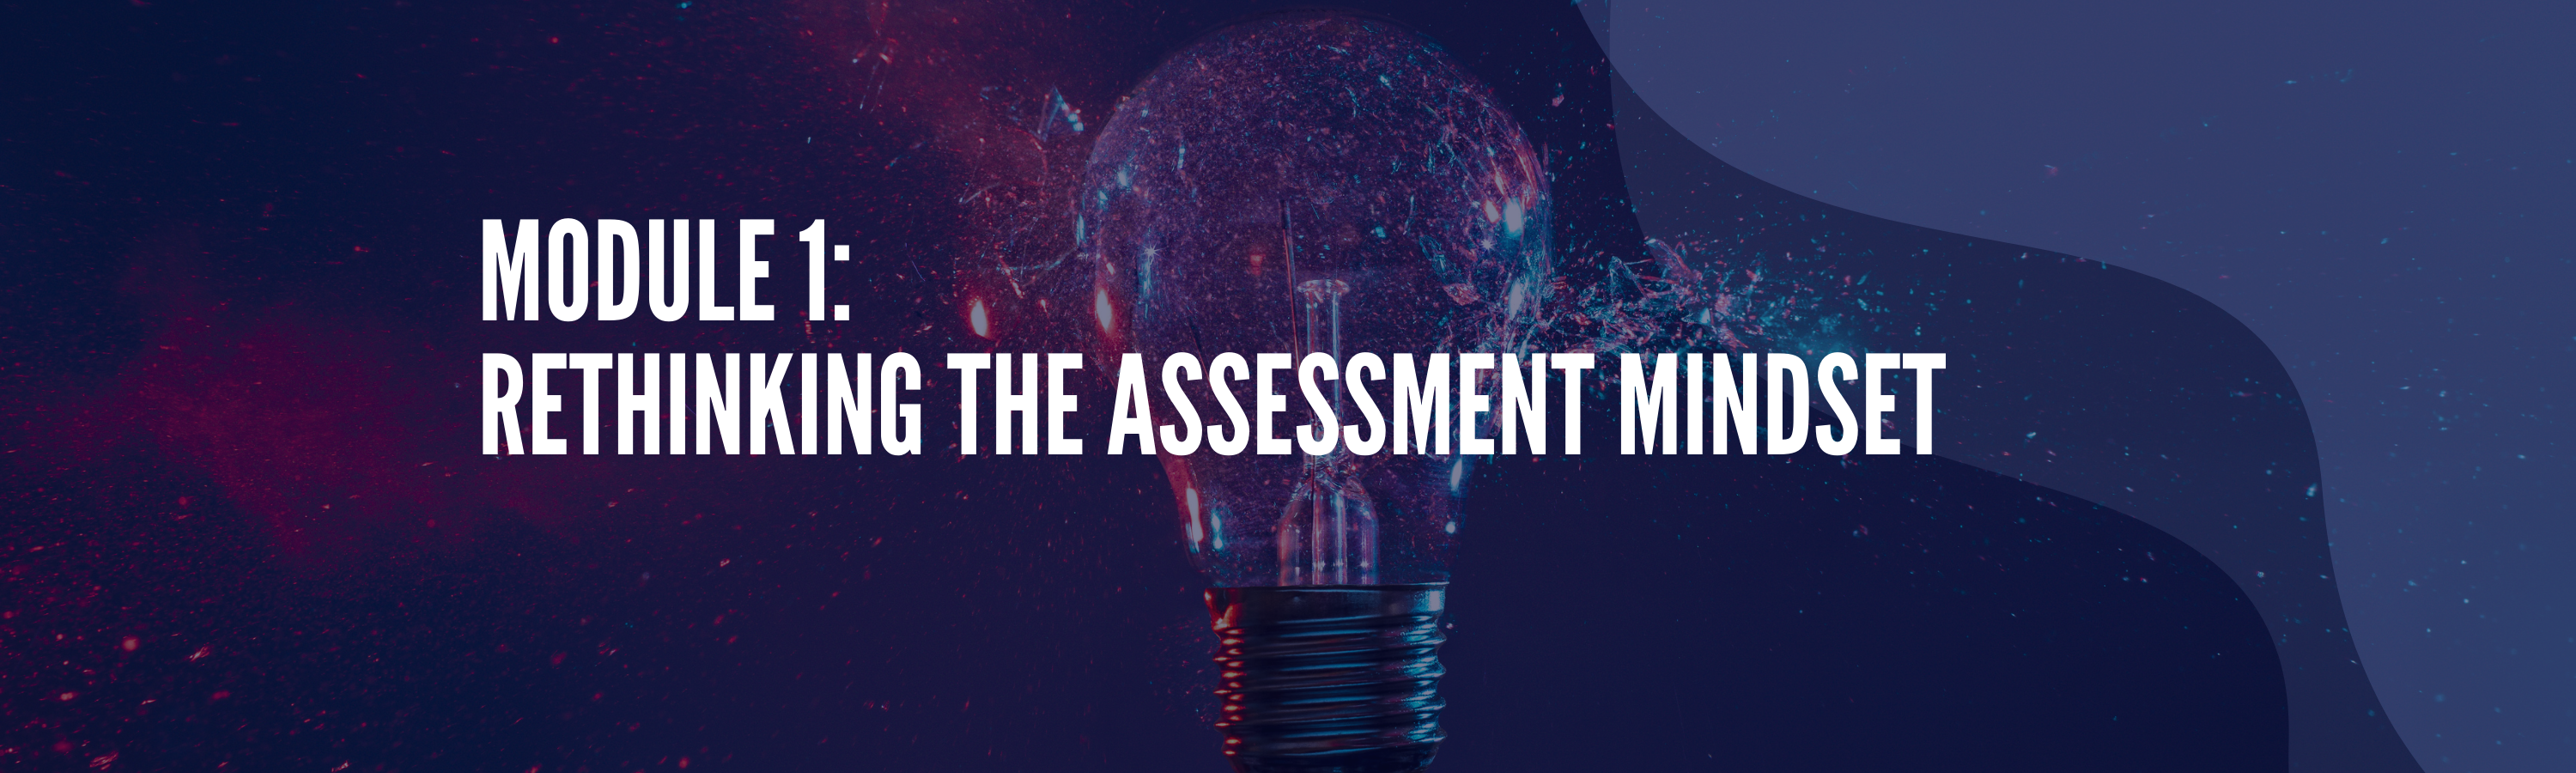 Rethinking the Assessment Mindset Banner